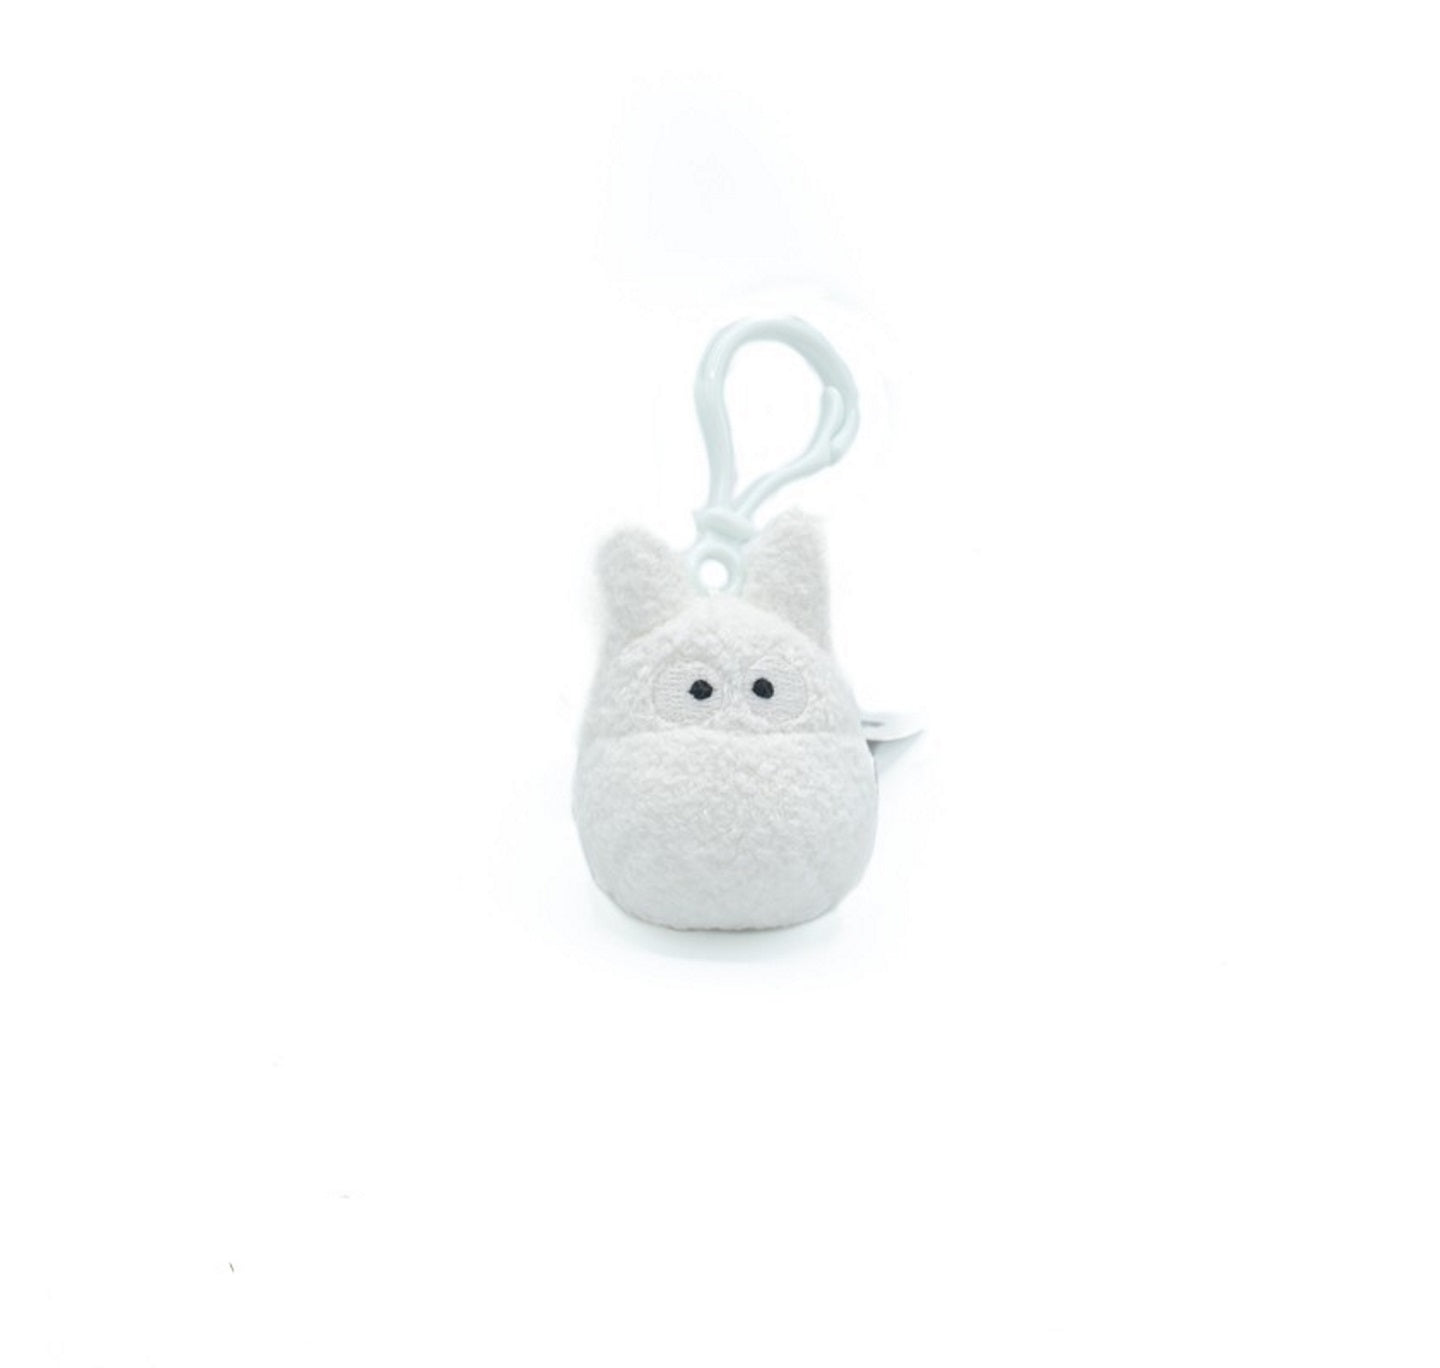 White Totoro Plush Backpack Clip - My Neighbor Totoro